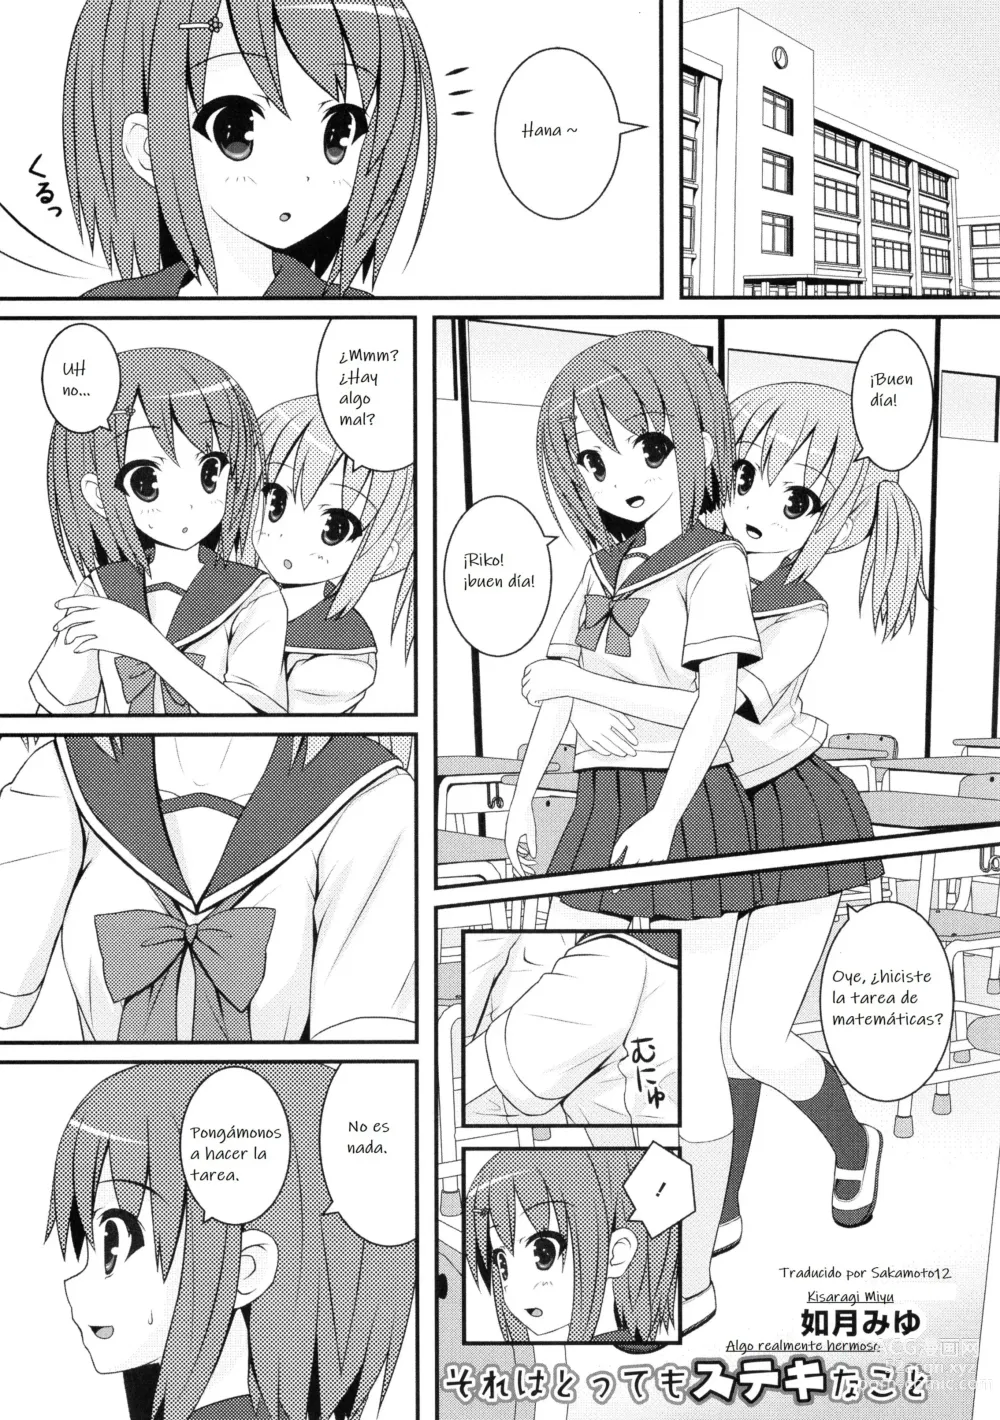 Page 1 of manga Algo realmente hermoso